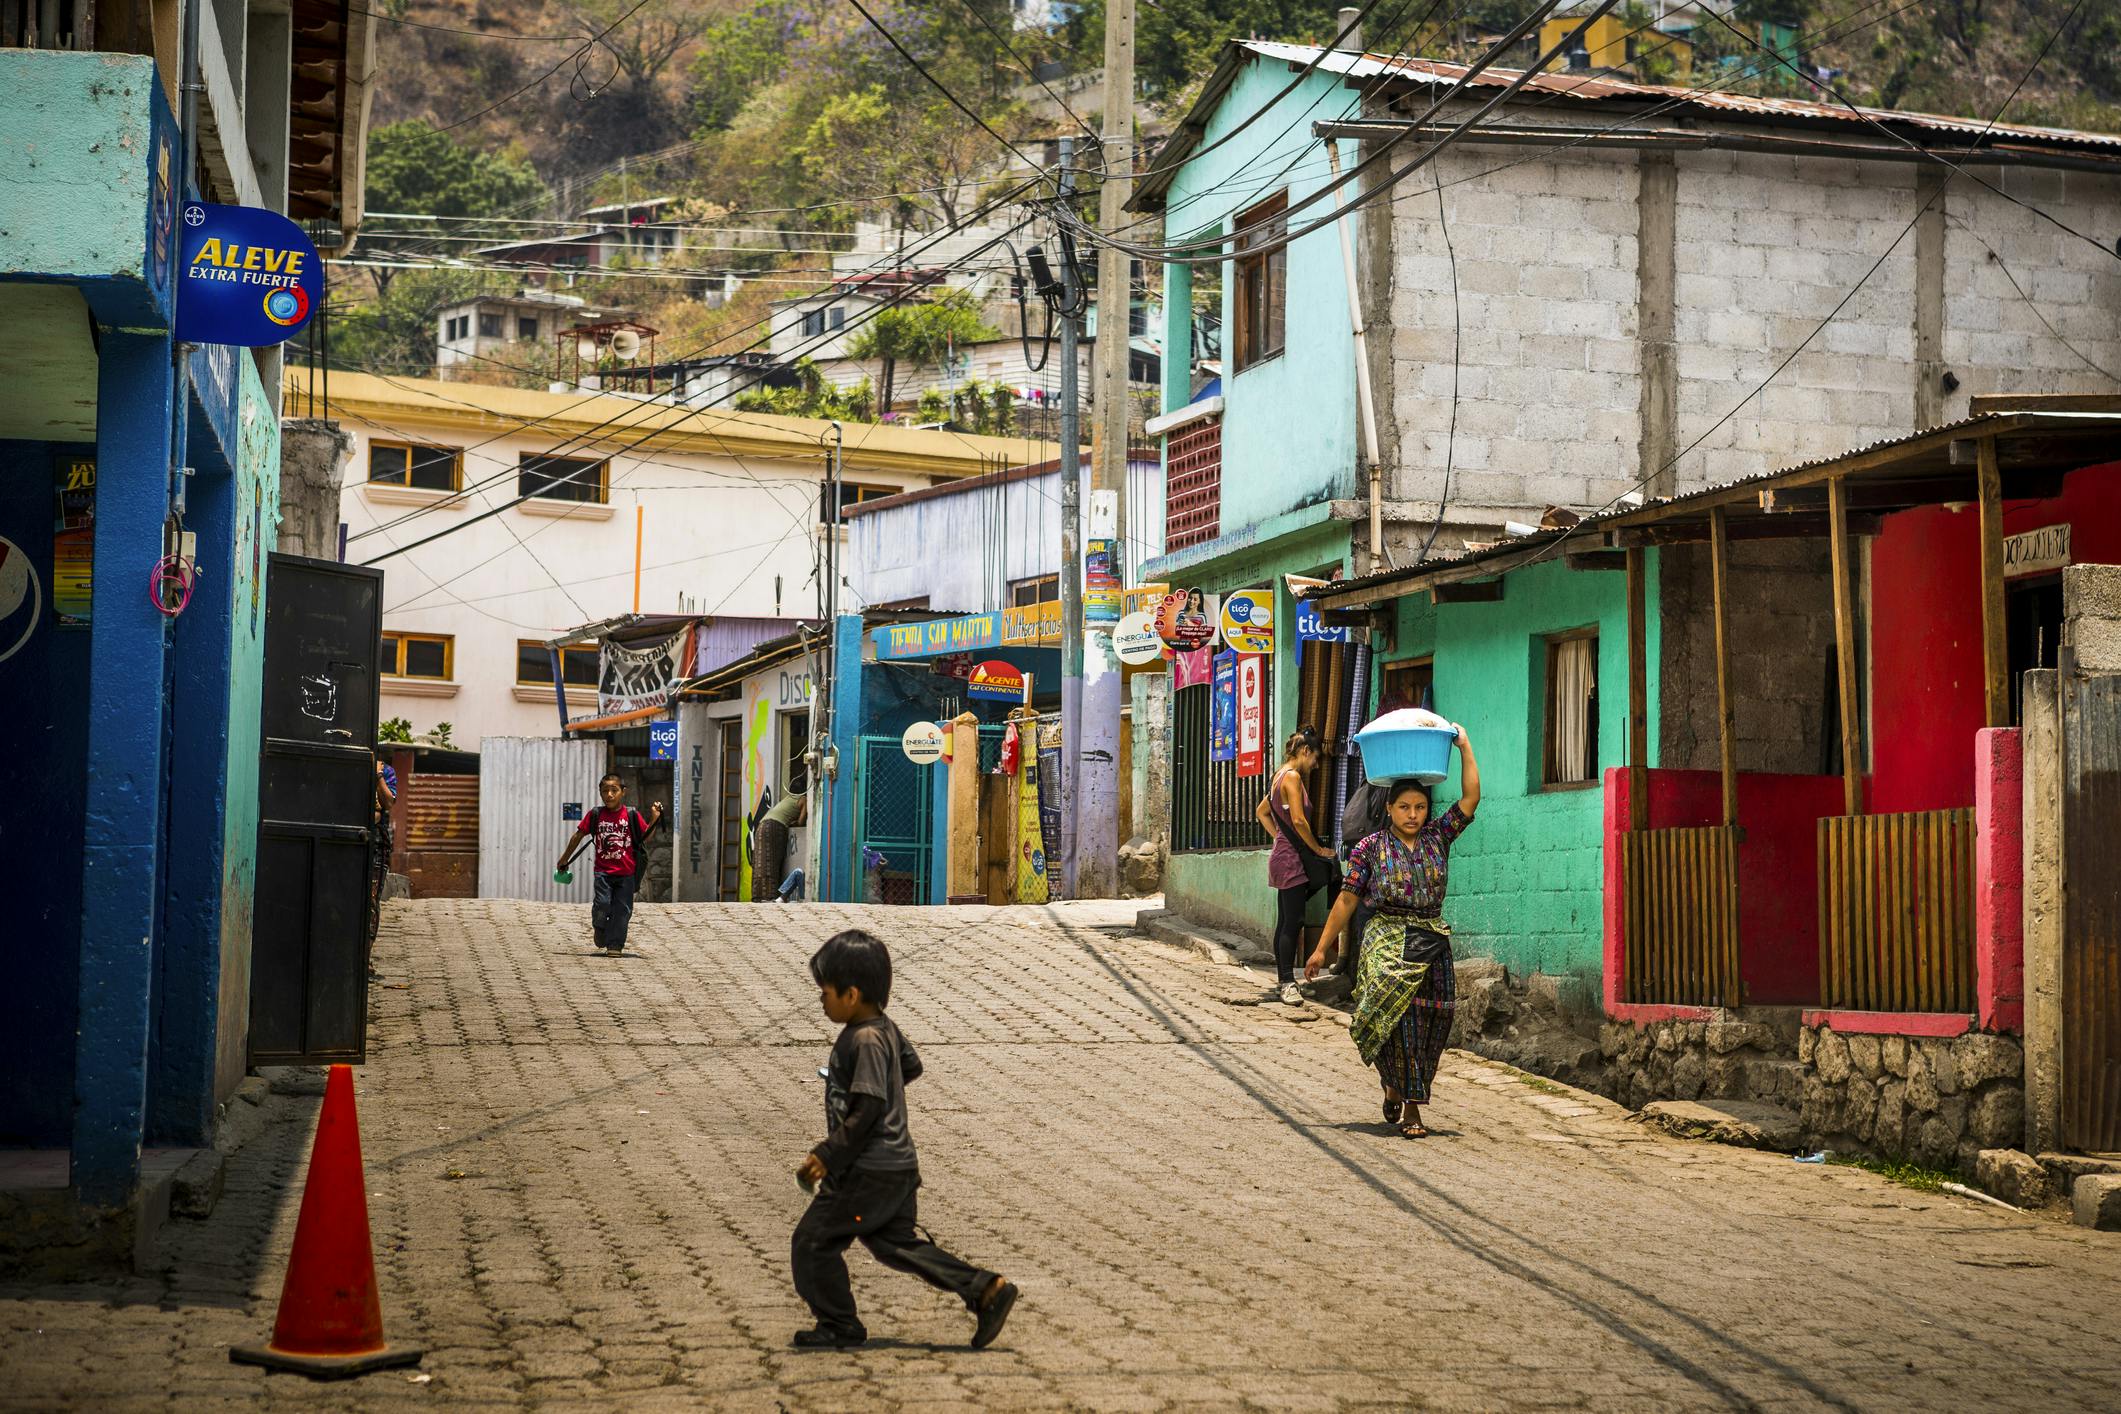 Town in Guatemala